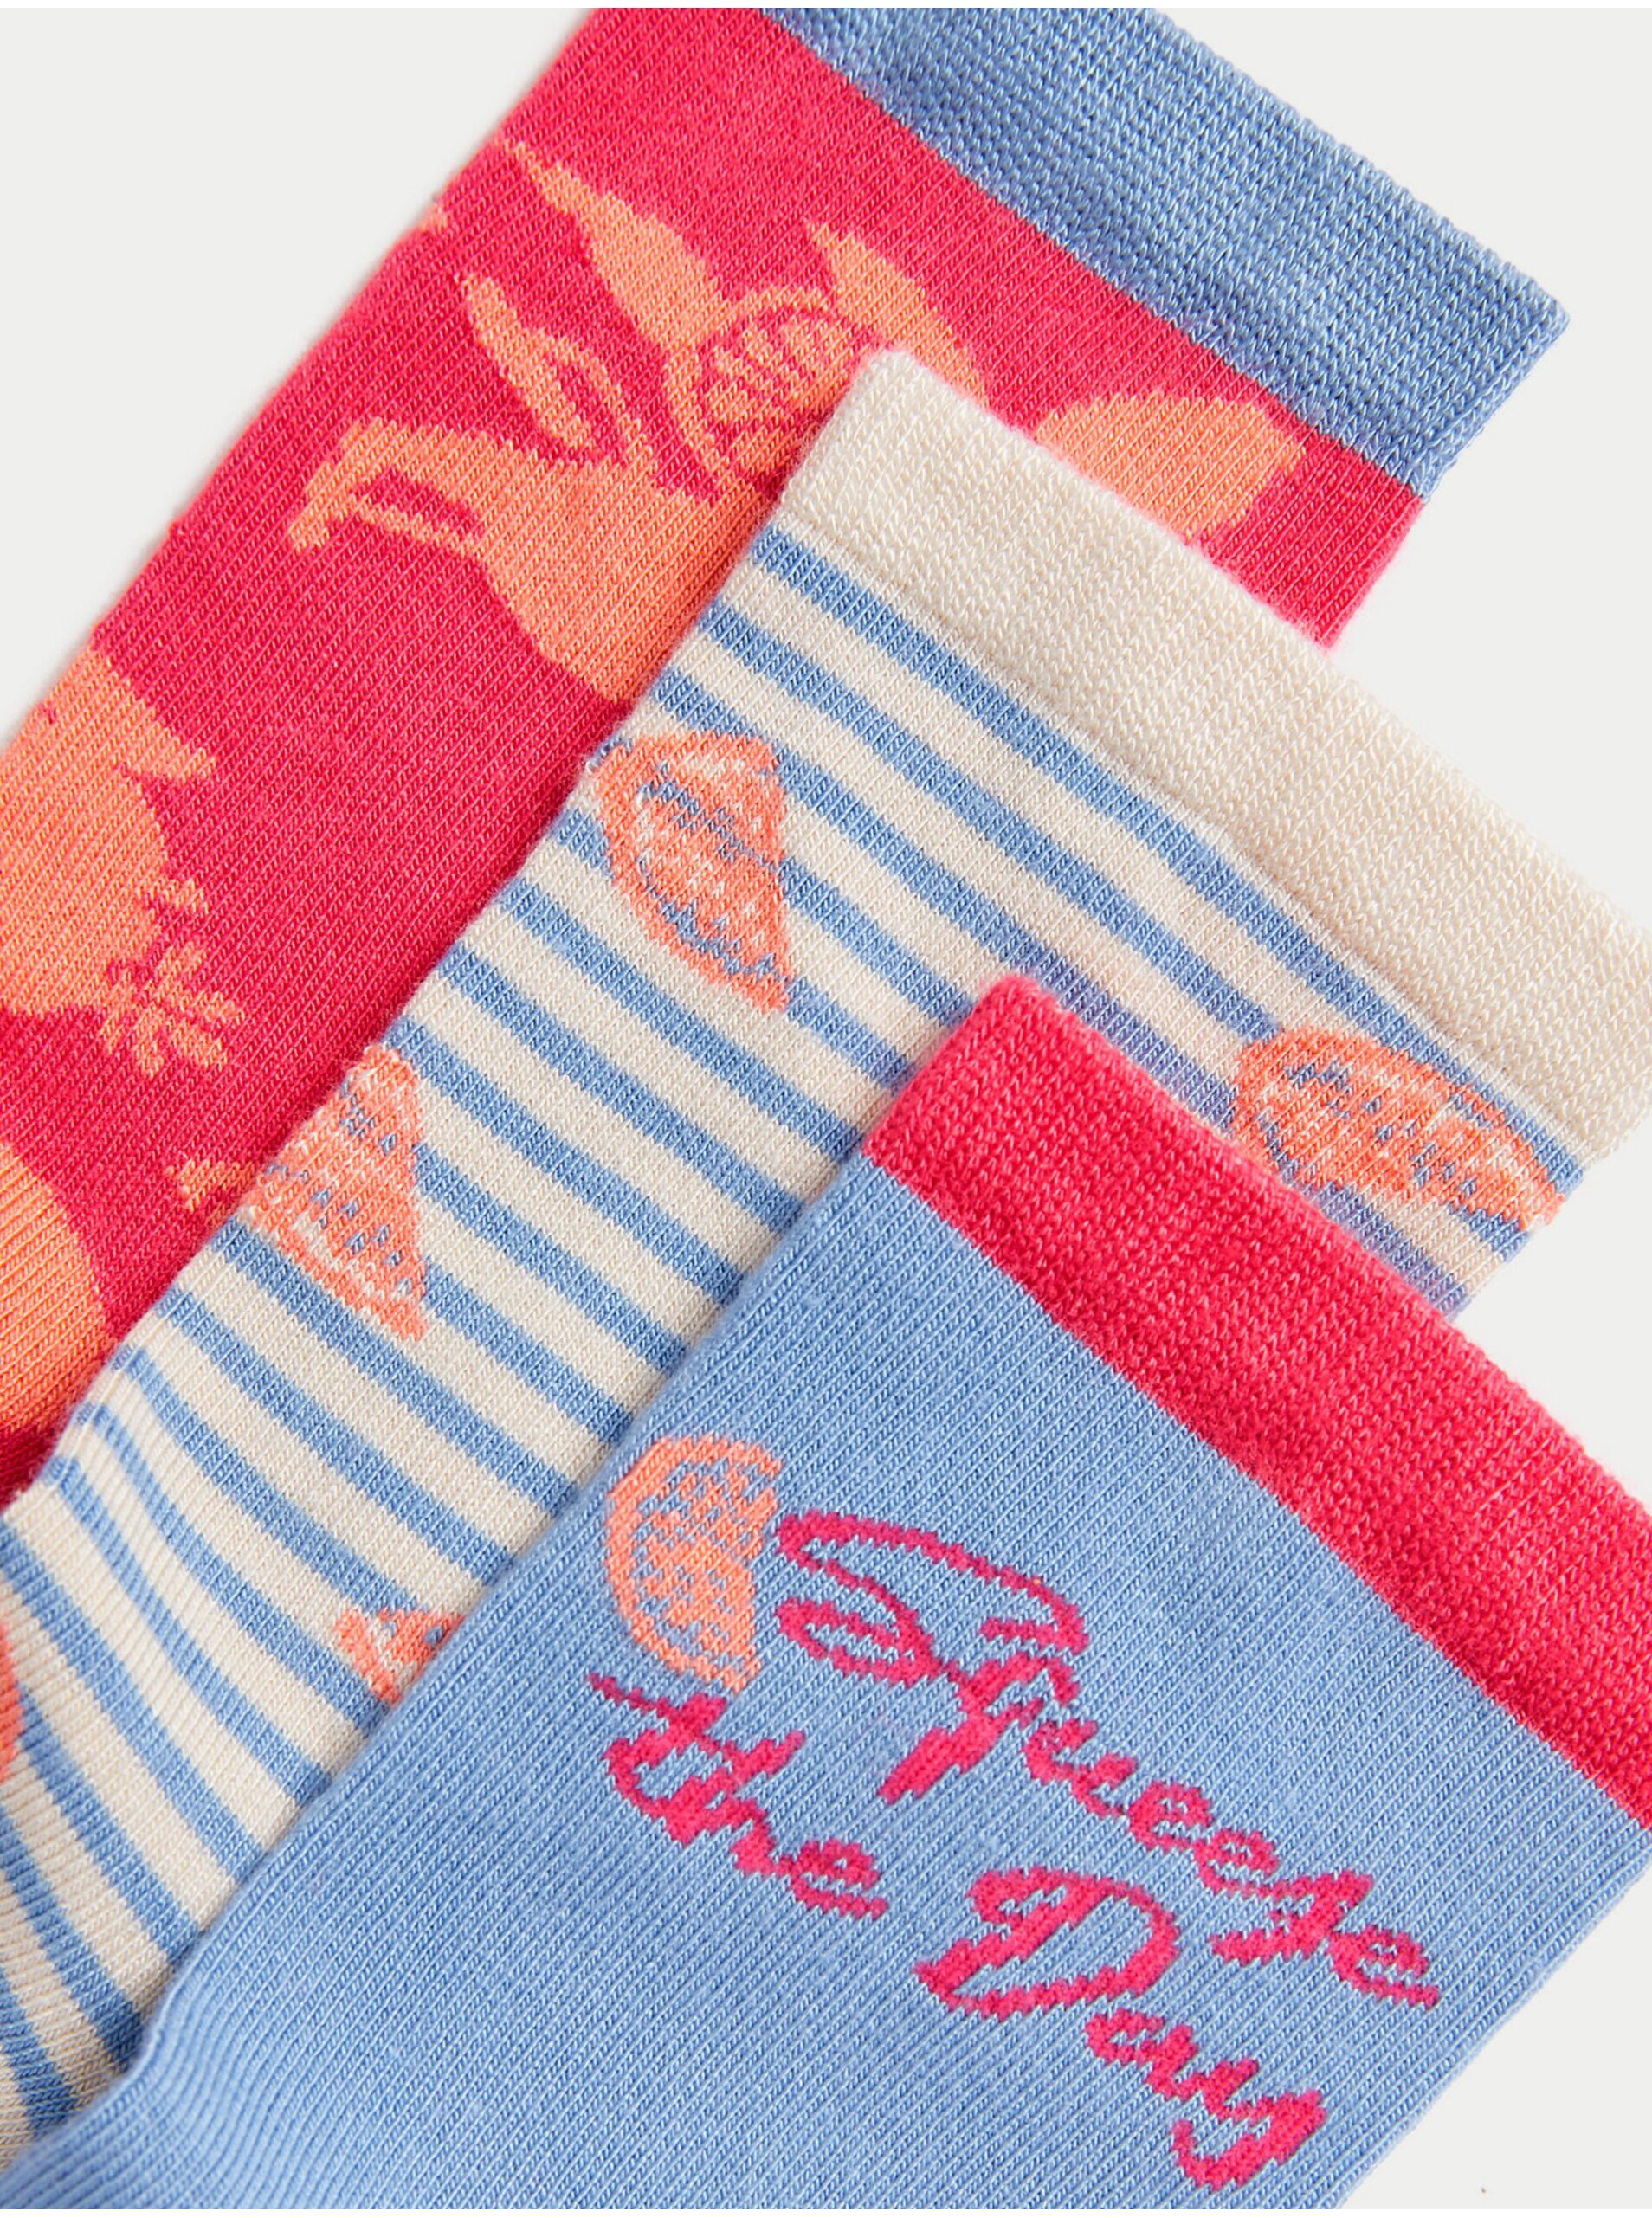 Lacno Súprava troch párov dámskych vzorovaných ponožiek v modrej a červenej farbe Marks & Spencer